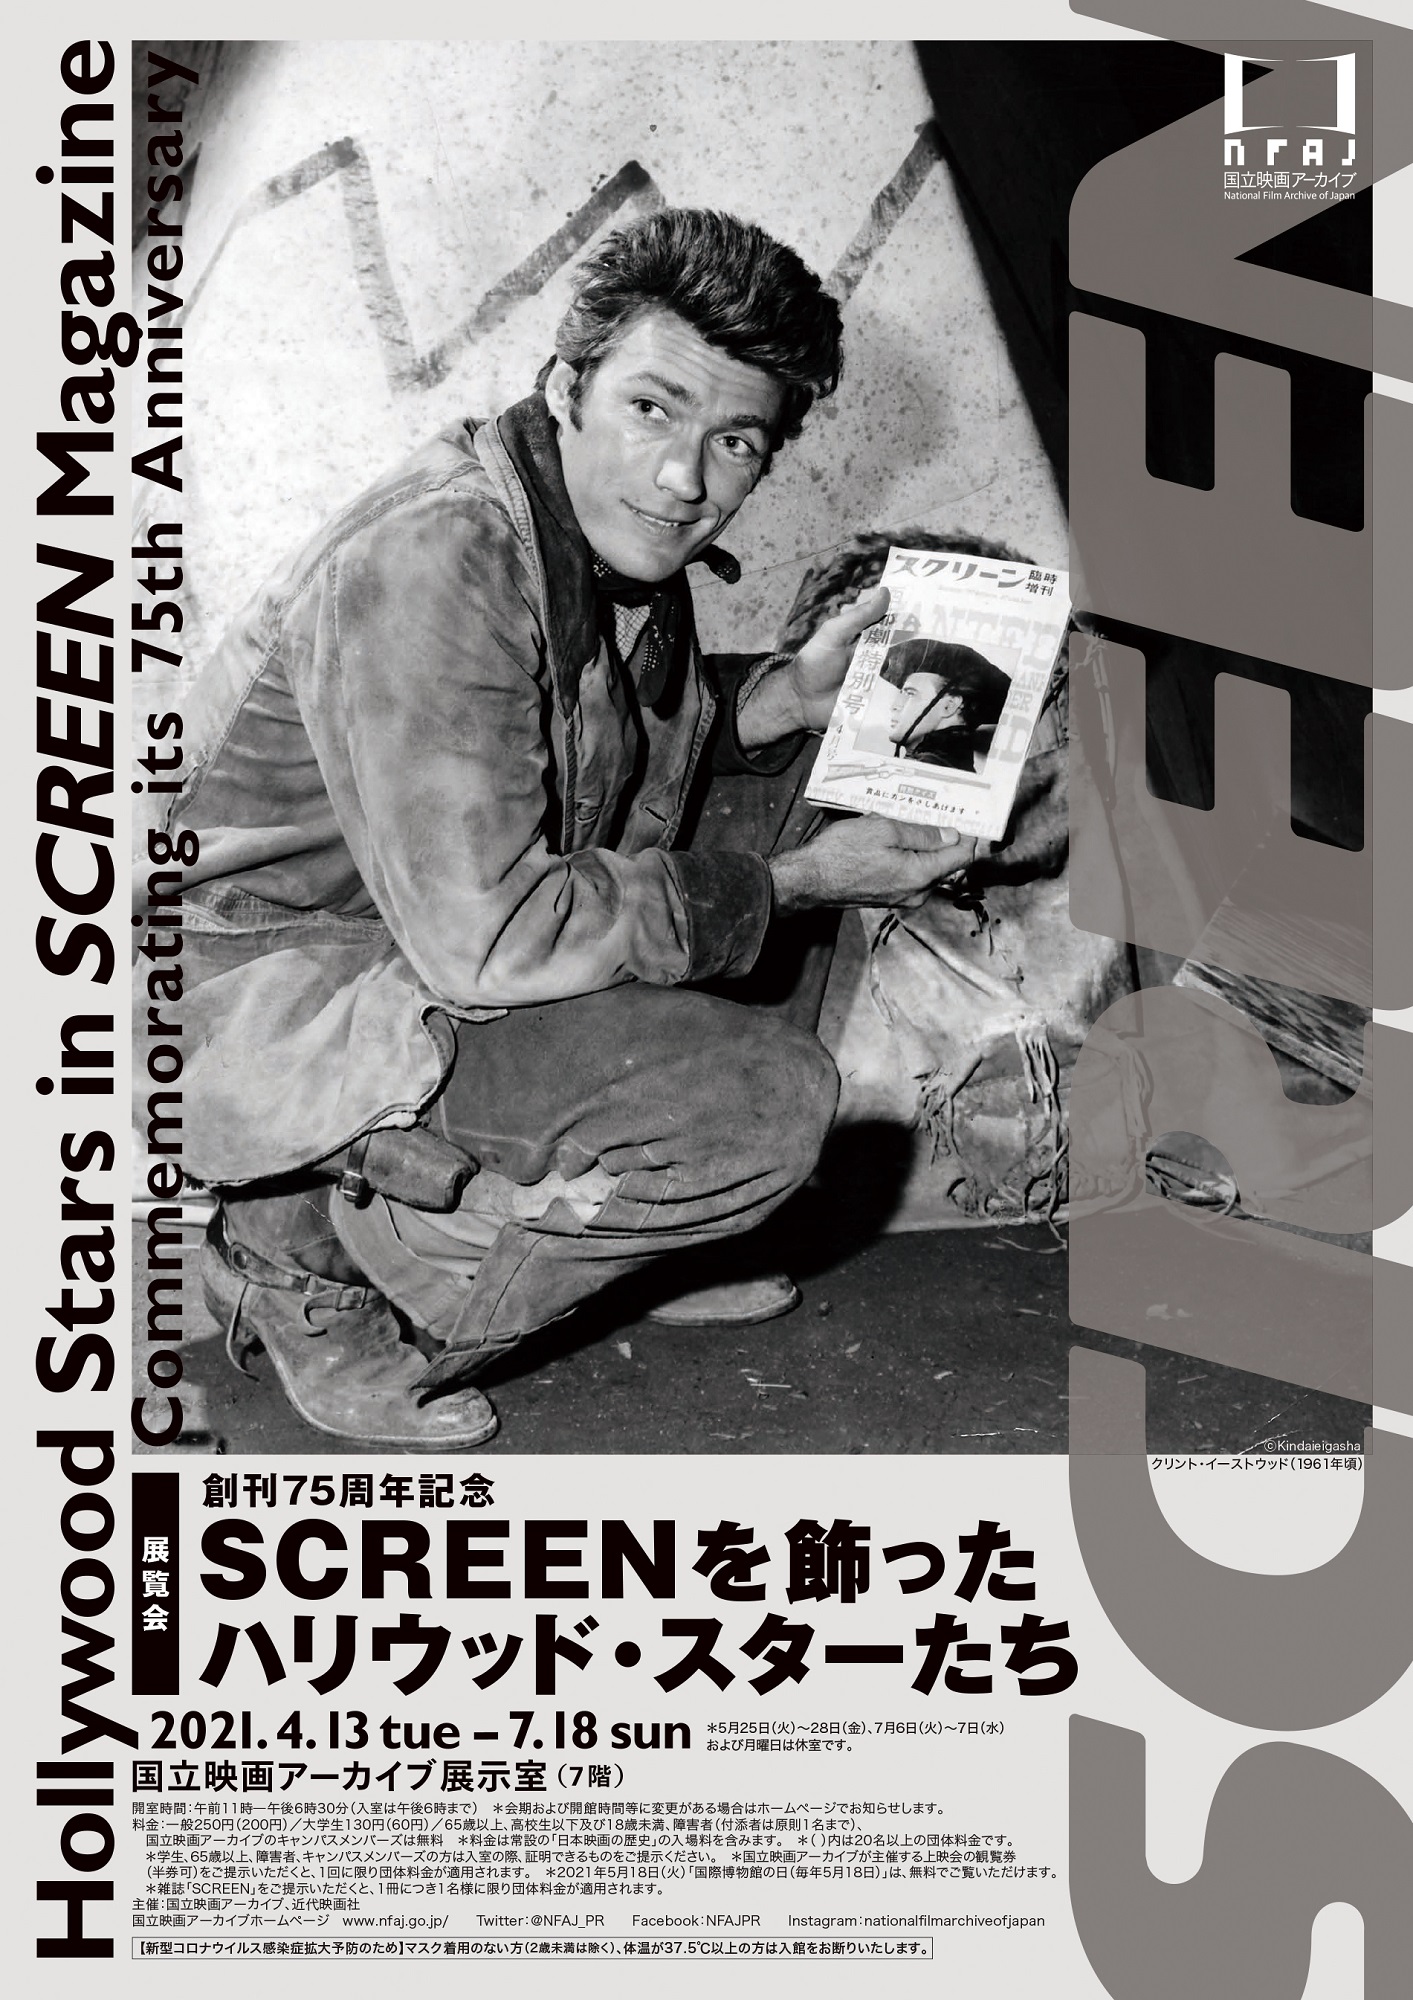 【国立映画アーカイブ】展覧会「創刊75周年記念 SCREENを飾ったハリウッド・スターたち」開催のお知らせ